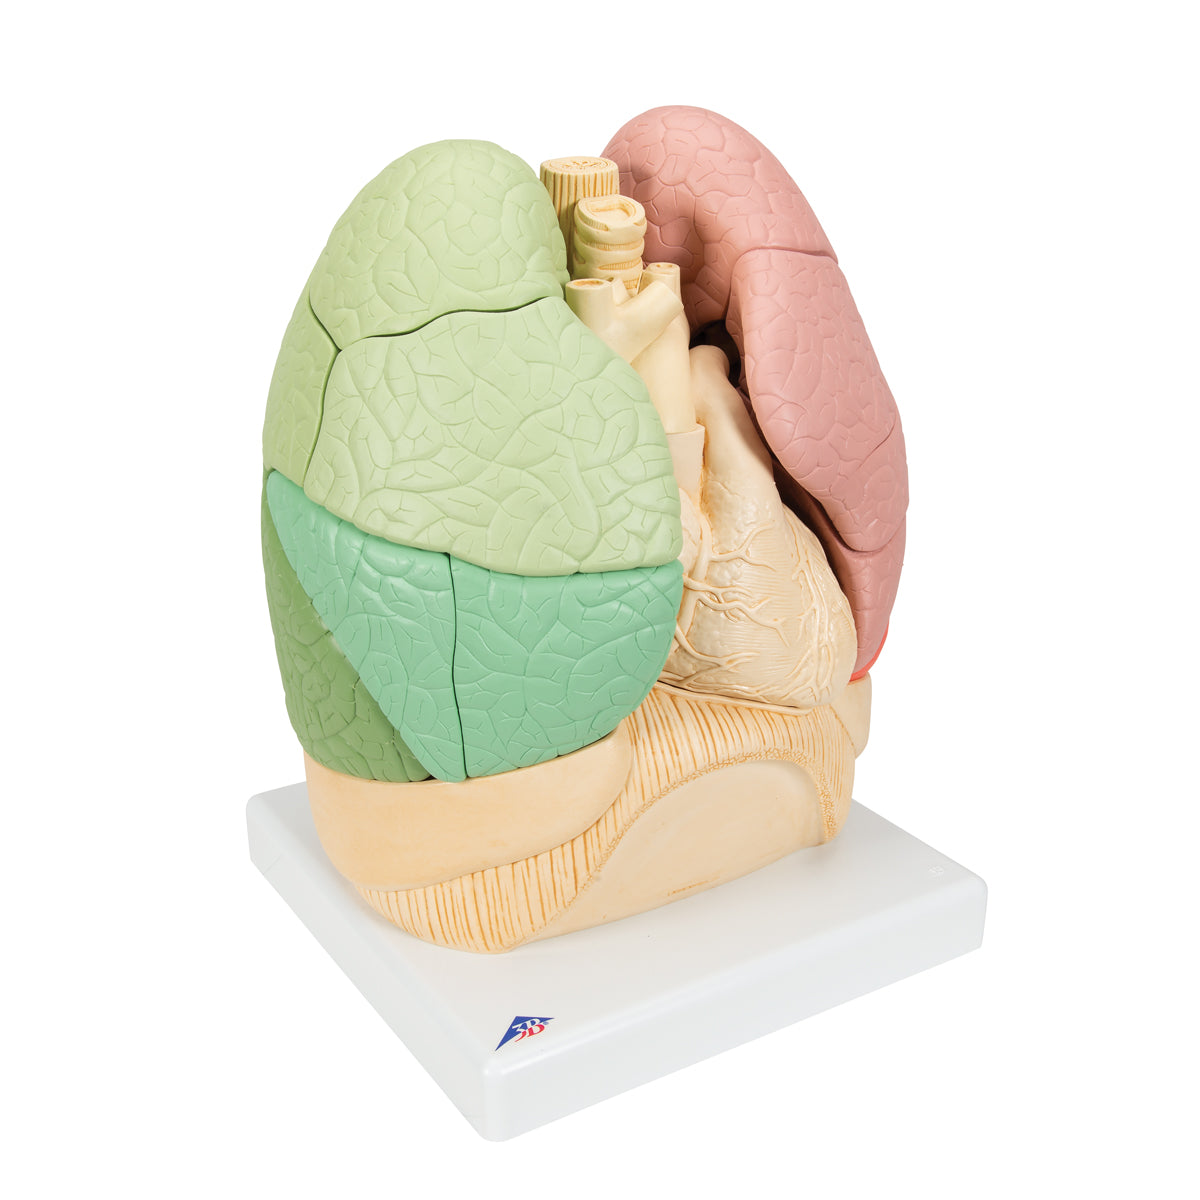 Lungmodell med hjärta och bronkier, uppdelad i segment